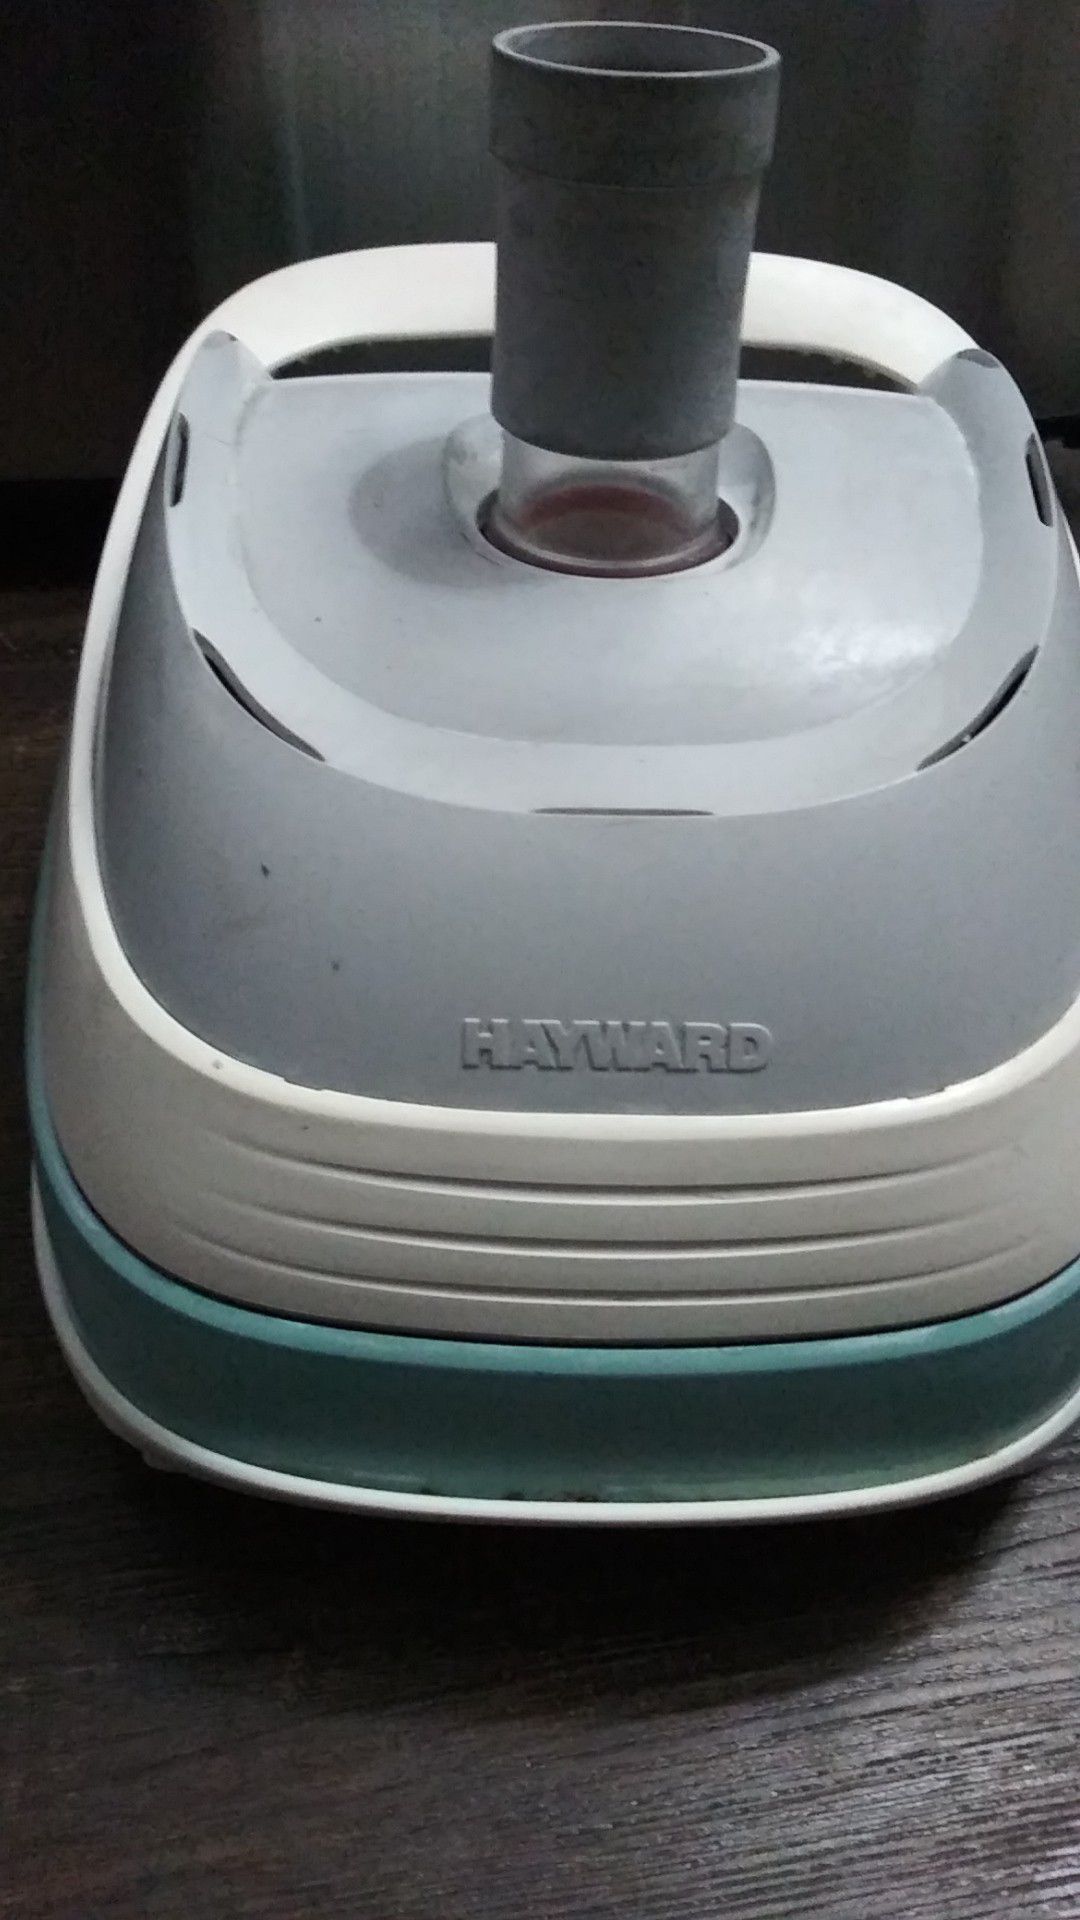 Heyward Poool Vacuum